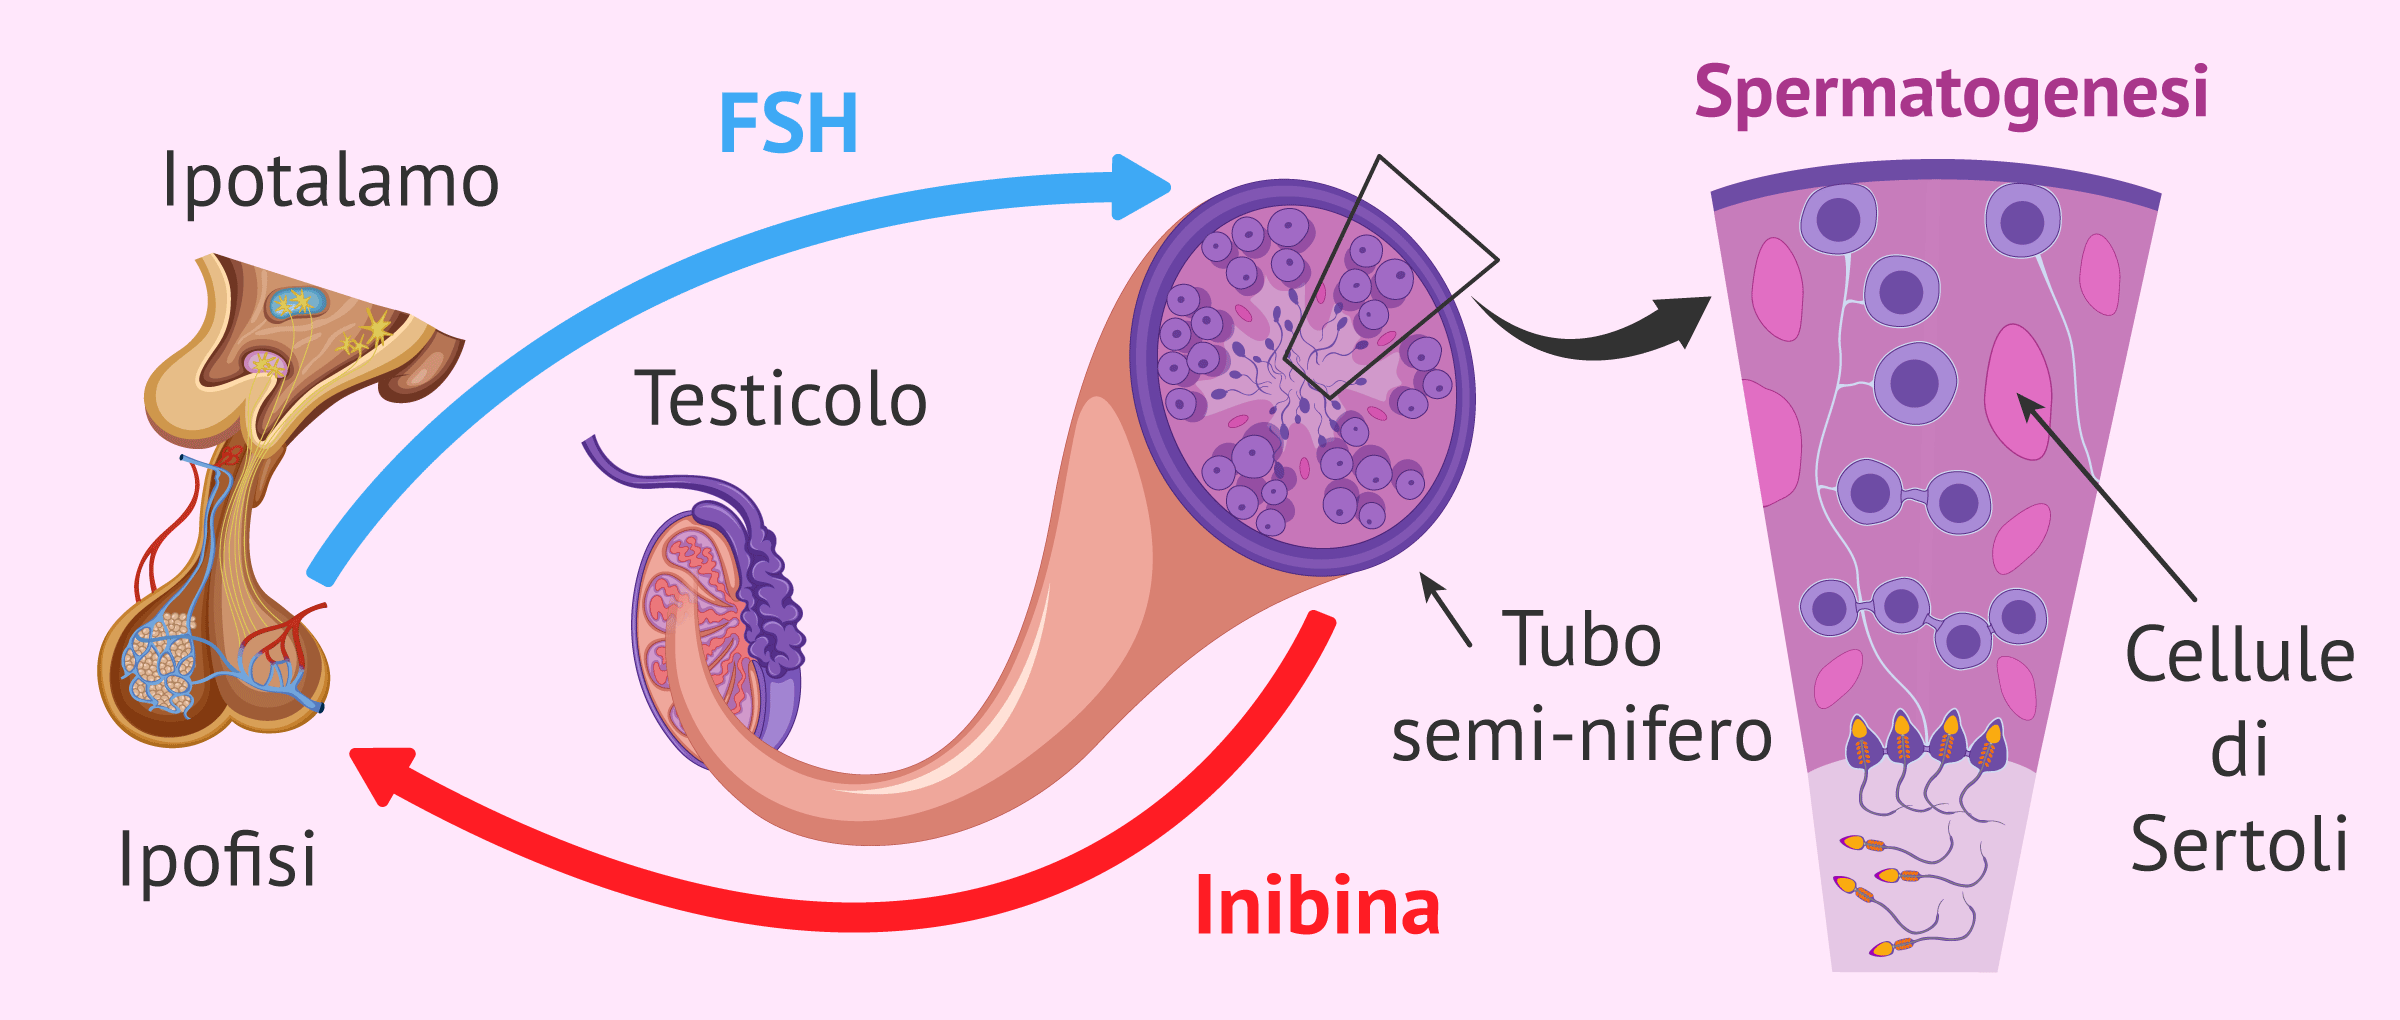 Regolazione della spermatogenesi da FSH